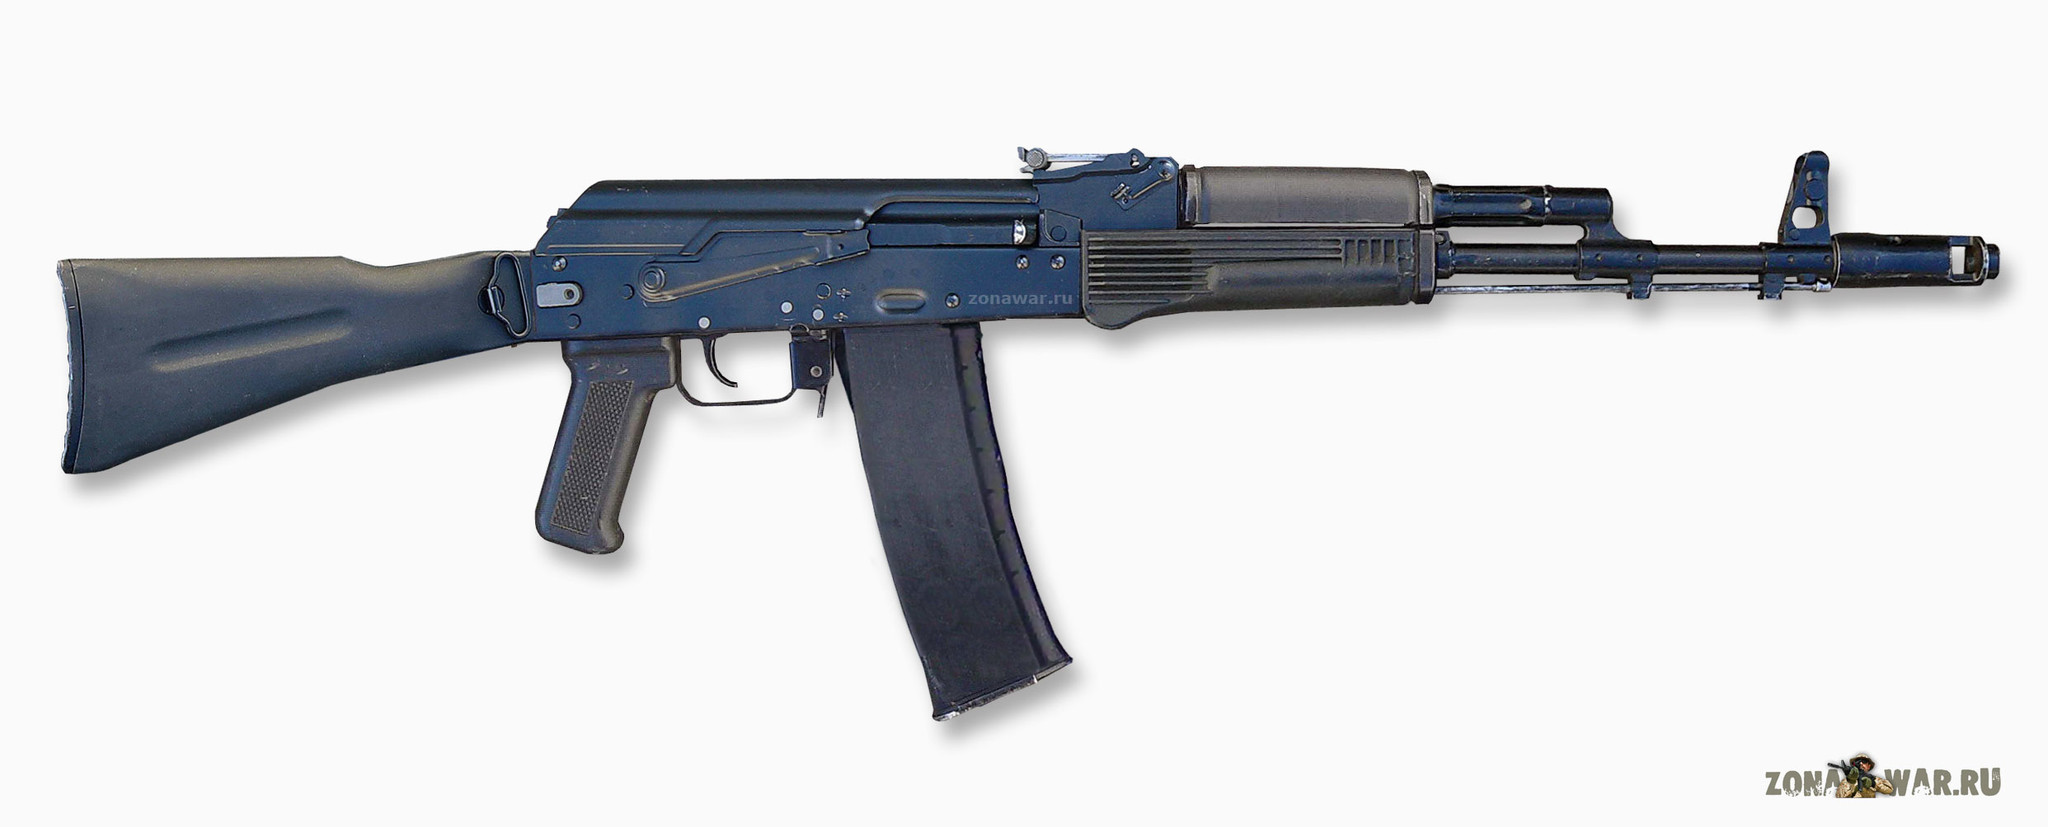 AK 101 assault rifle